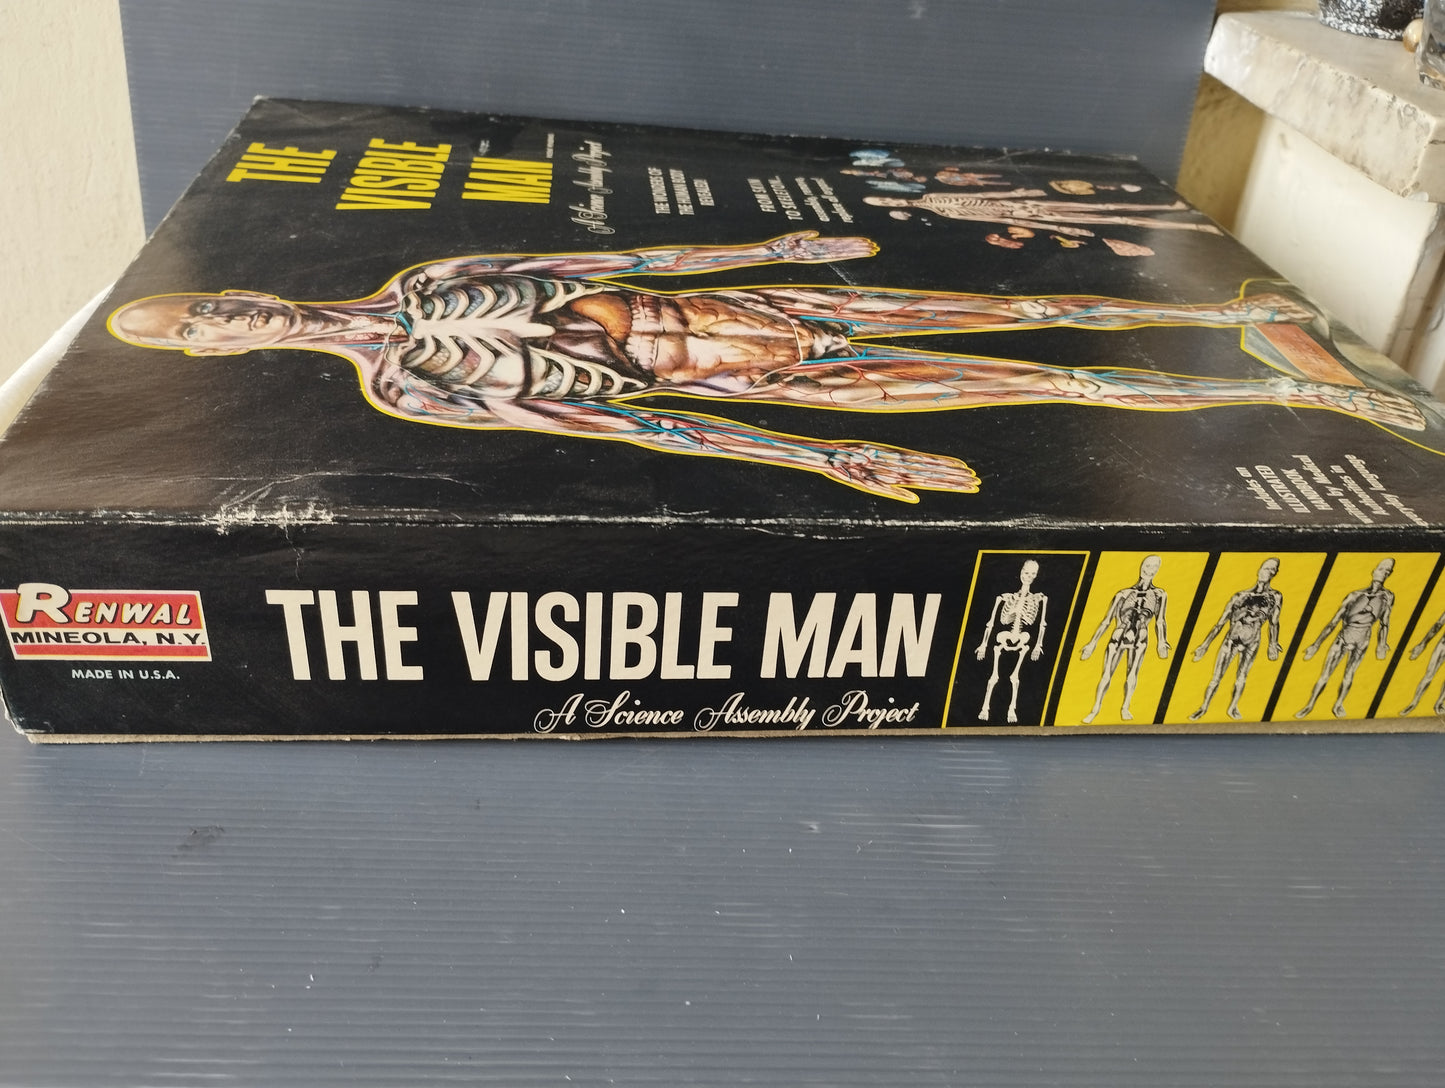 The Visibile Man"

Gioco Didattico prodotto negli anni 50 da Renwal

Made in USA